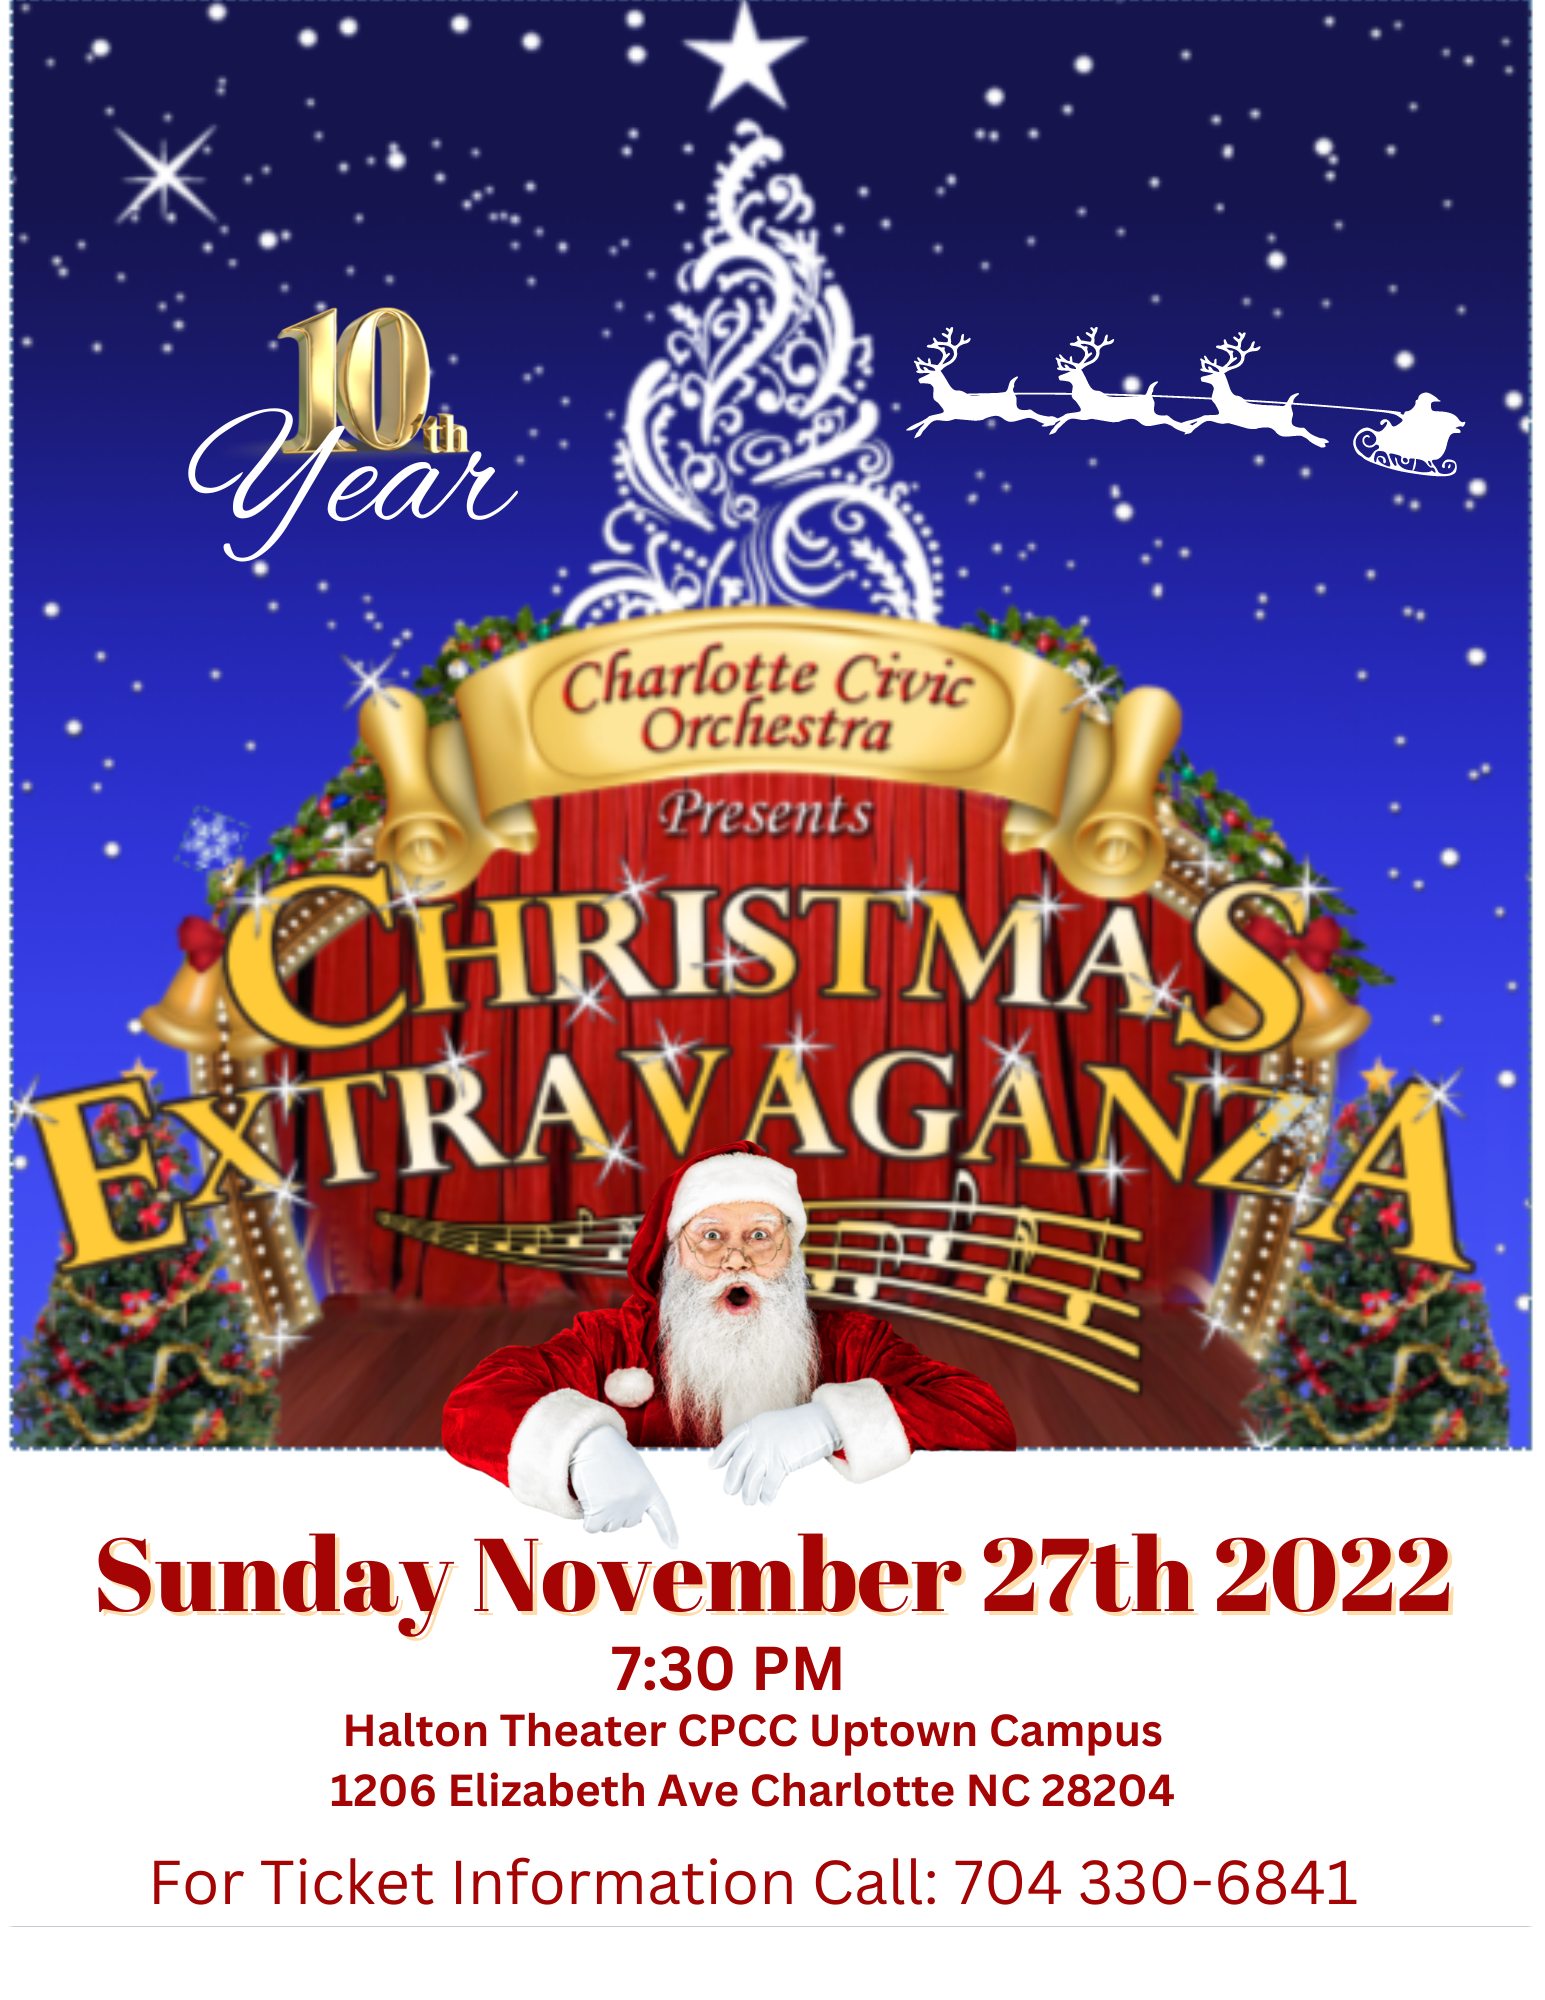 Christmas Extravaganza 2022 flyer